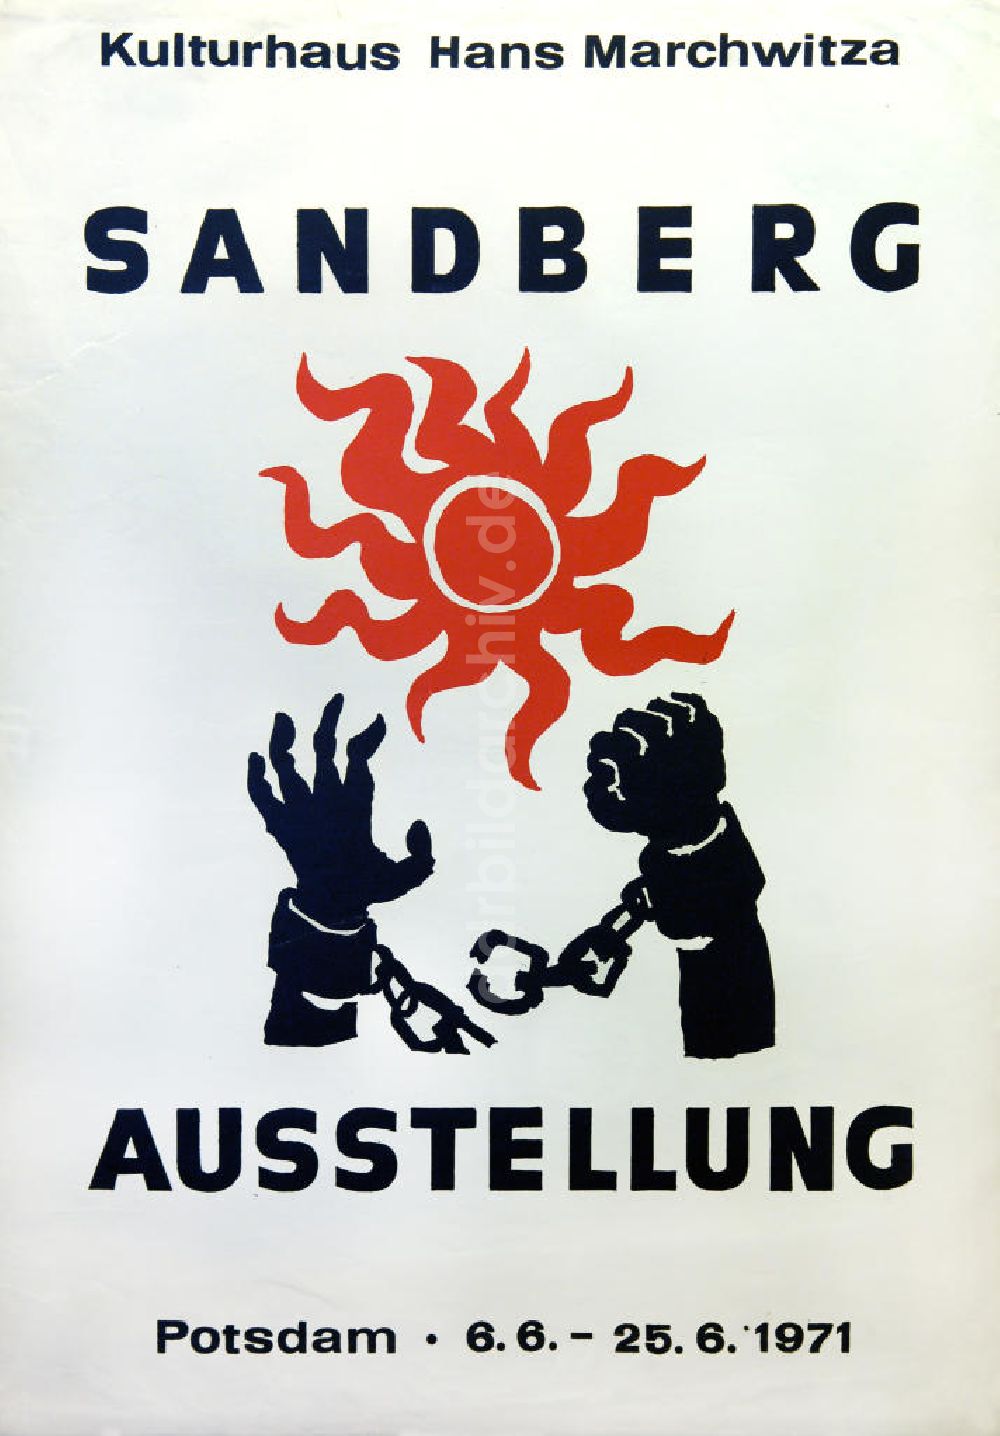 Berlin: Plakat von der Ausstellung Sandberg über Herbert Sandberg aus dem Jahr 1971